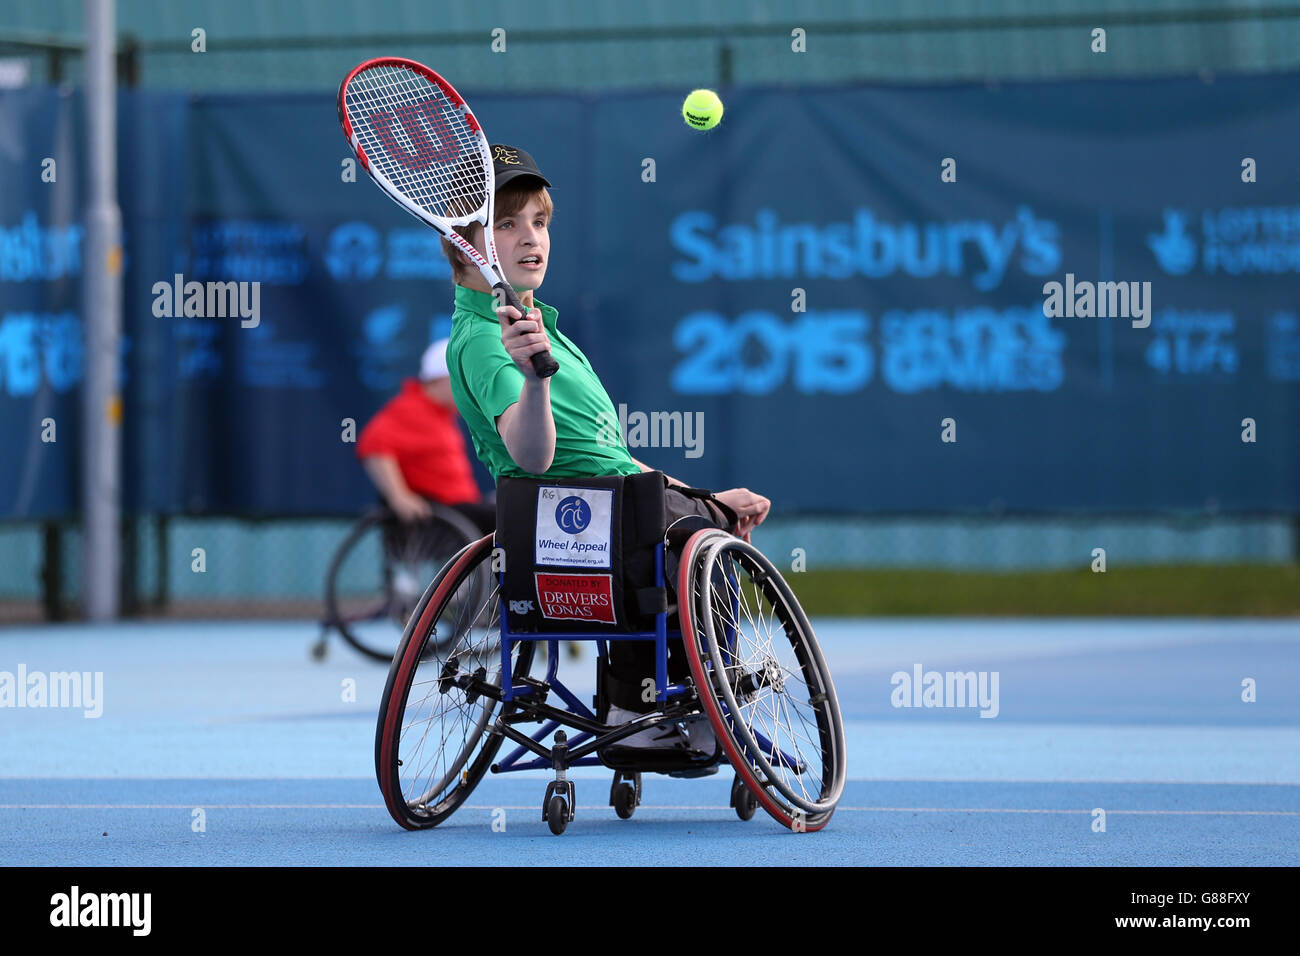 Ross Gourley, en Irlande du Nord, a tourné pendant le tennis en fauteuil roulant aux jeux scolaires de Sainsbury en 2015 au centre régional de tennis de Manchester. Banque D'Images